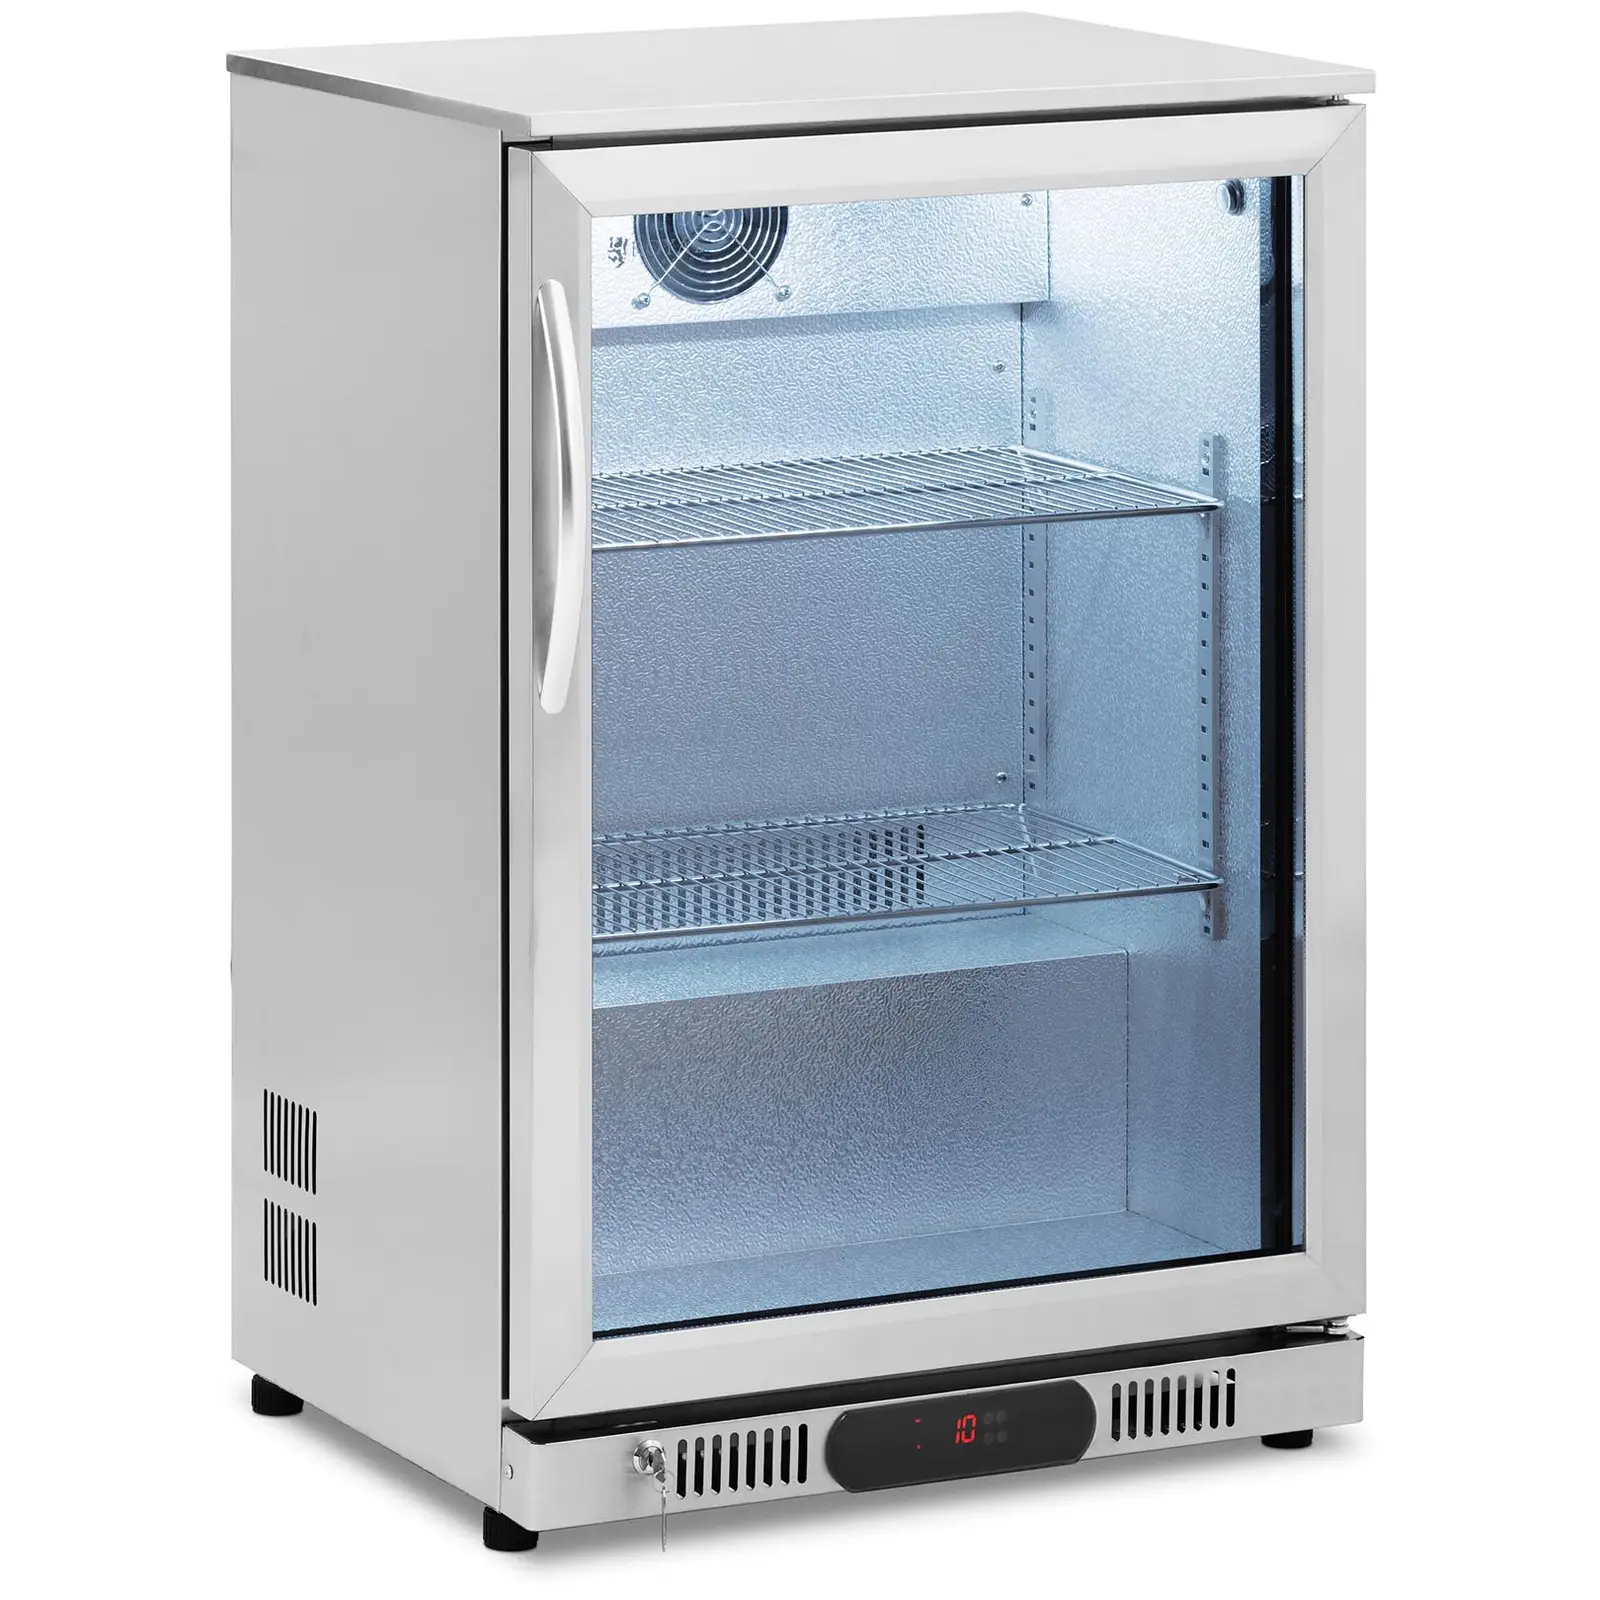 Arca refrigeradora - 138 l - Royal Catering - aço inoxidável